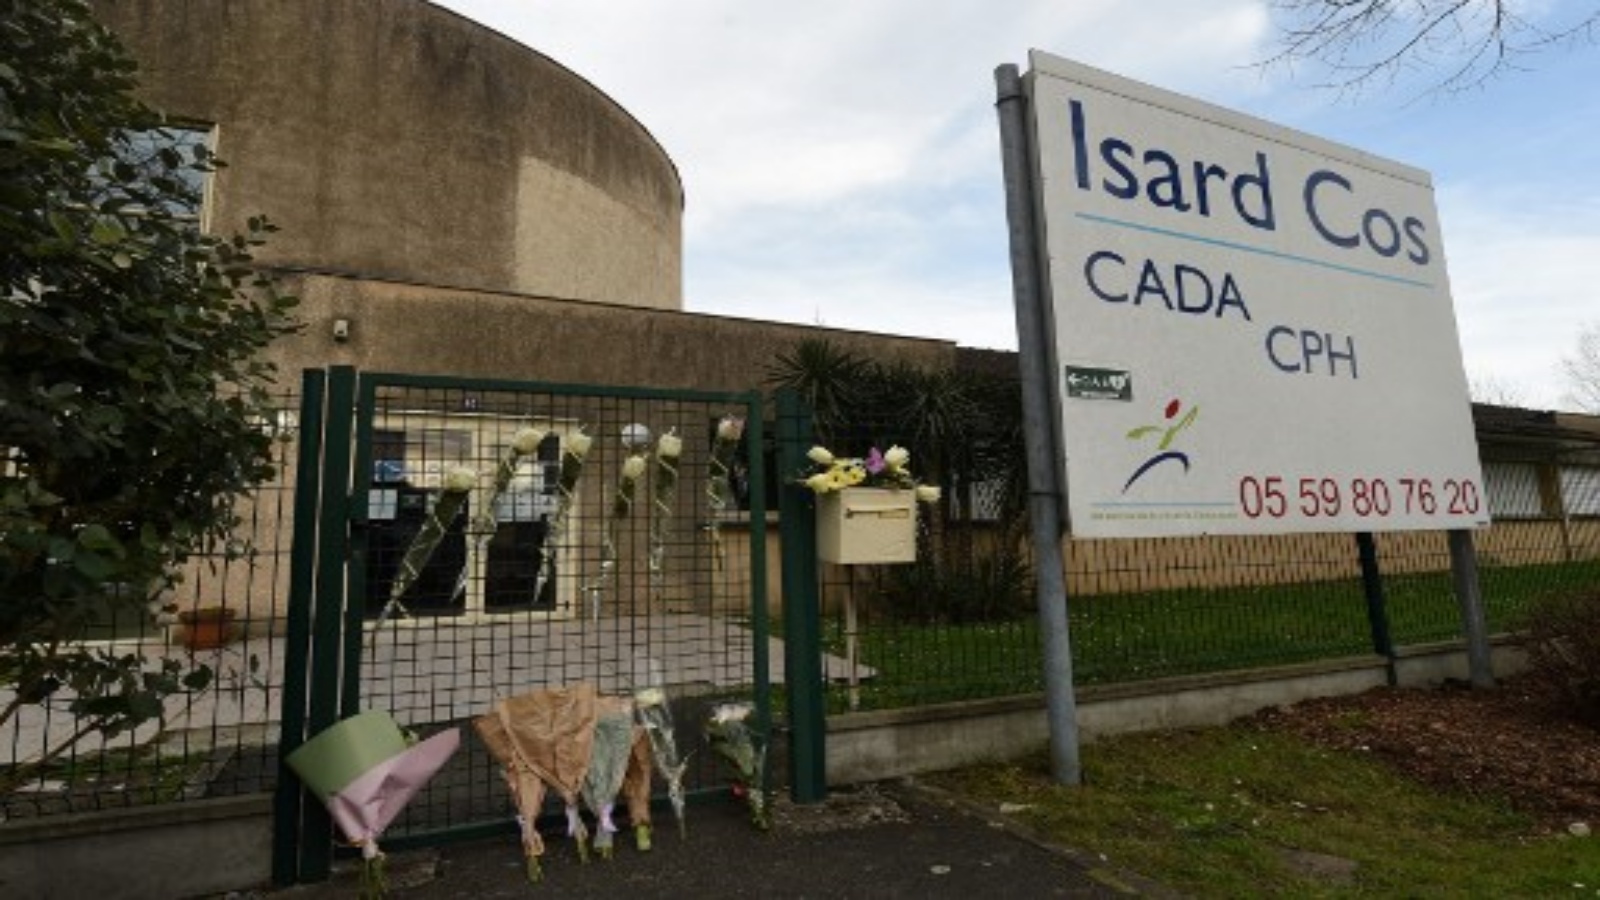 دخل مركز إيسارد لاستقبال طالبي اللجوء (CADA) في بو ، بعد يوم من طعن أحد المديرين حتى الموت من قبل طالب لجوء في باو ، جنوب غرب فرنسا ، في 20 فبراير 2021.